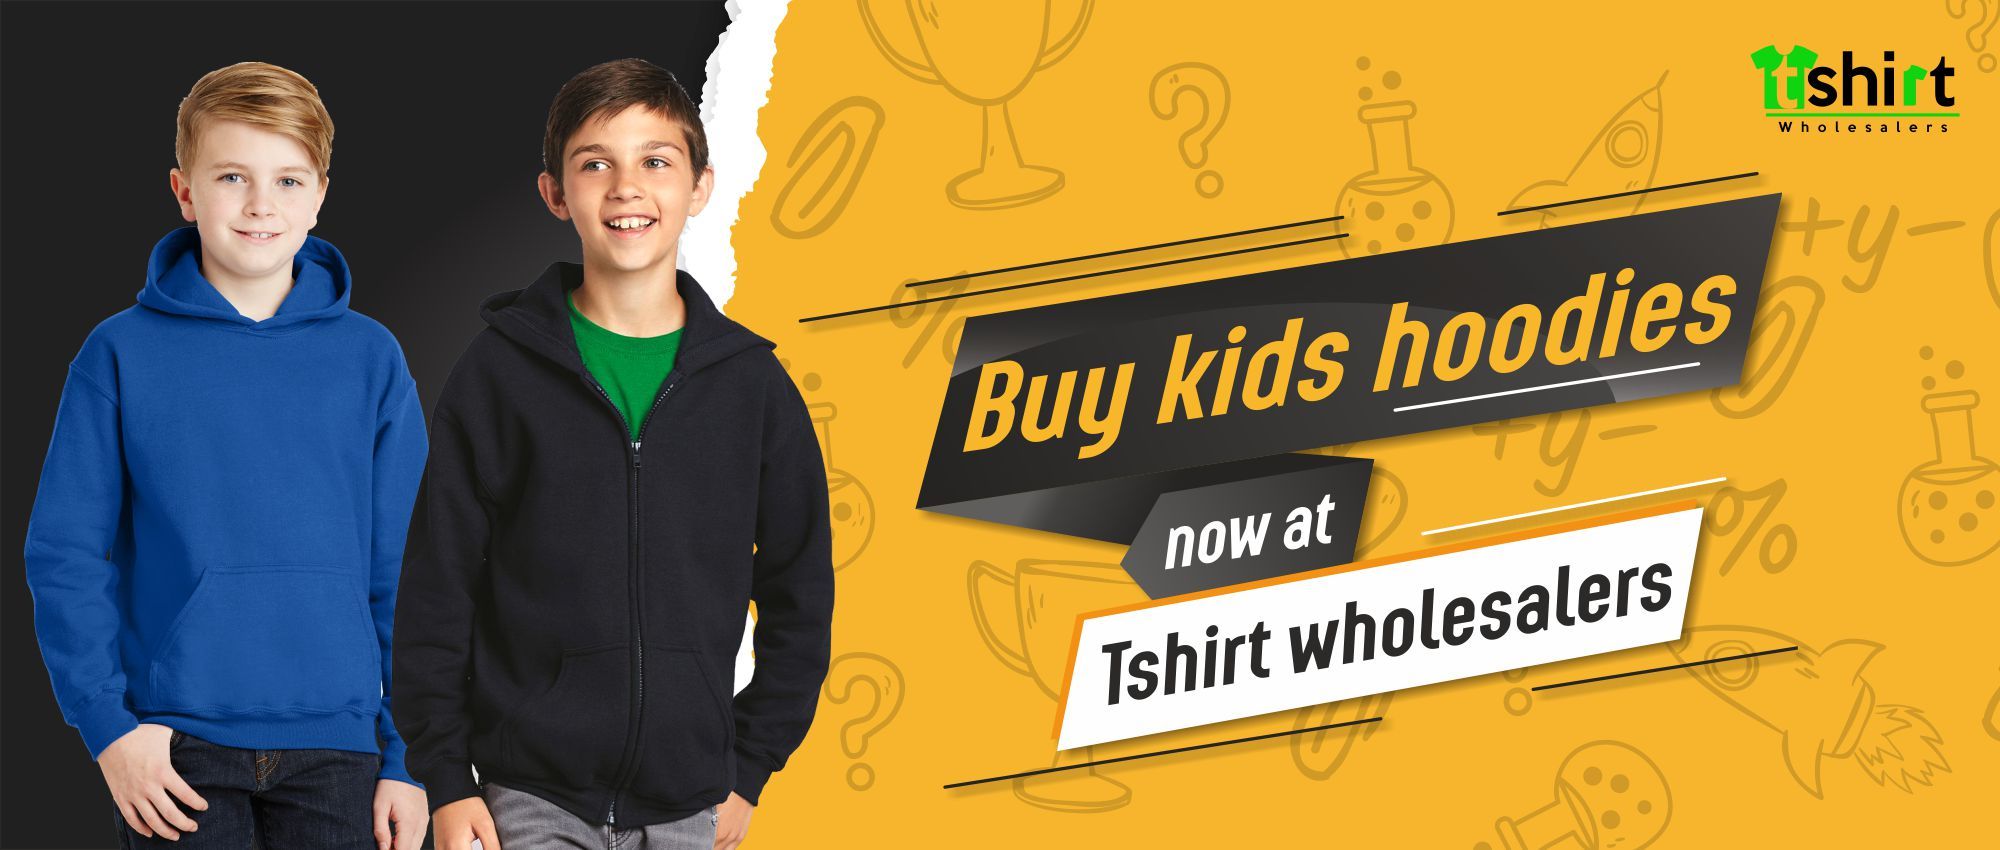 Buy kids hoodies now at Tshirt wholesalers